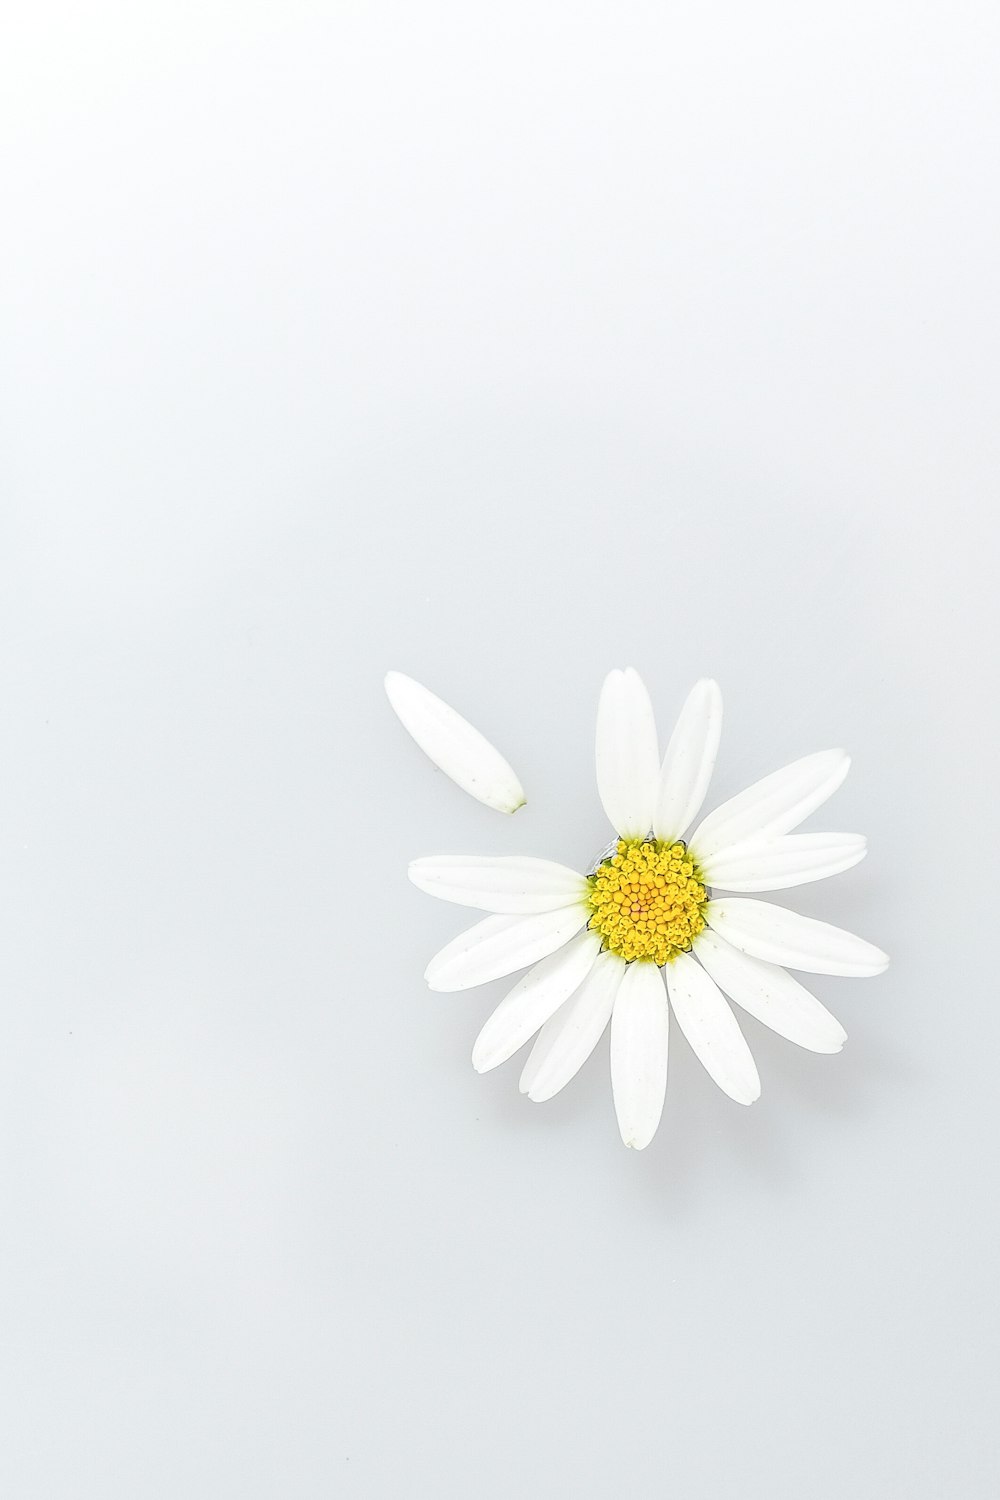 咲く白いデイジー、クローズアップ写真